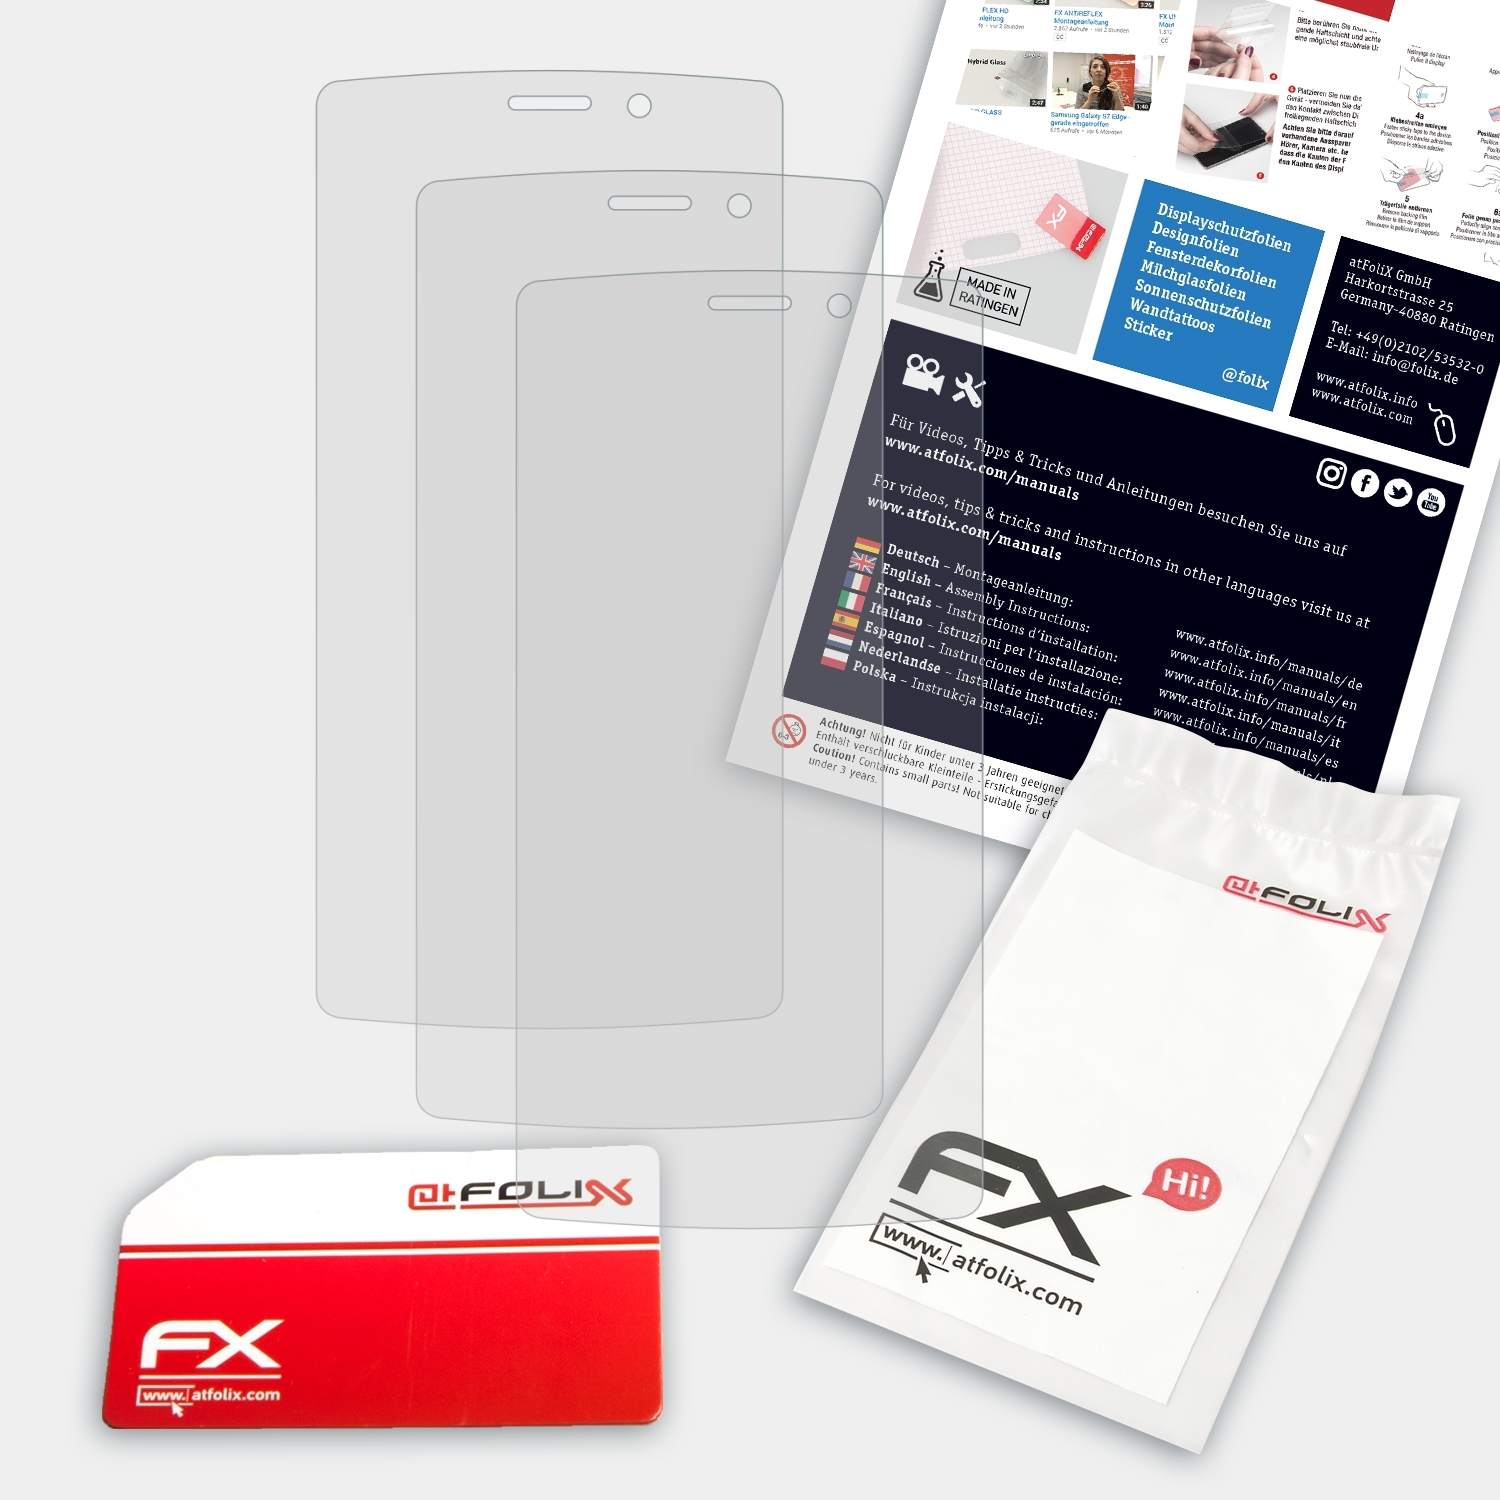 ATFOLIX FX-Antireflex Max) C5 3x Displayschutz(für TP-Link Neffos